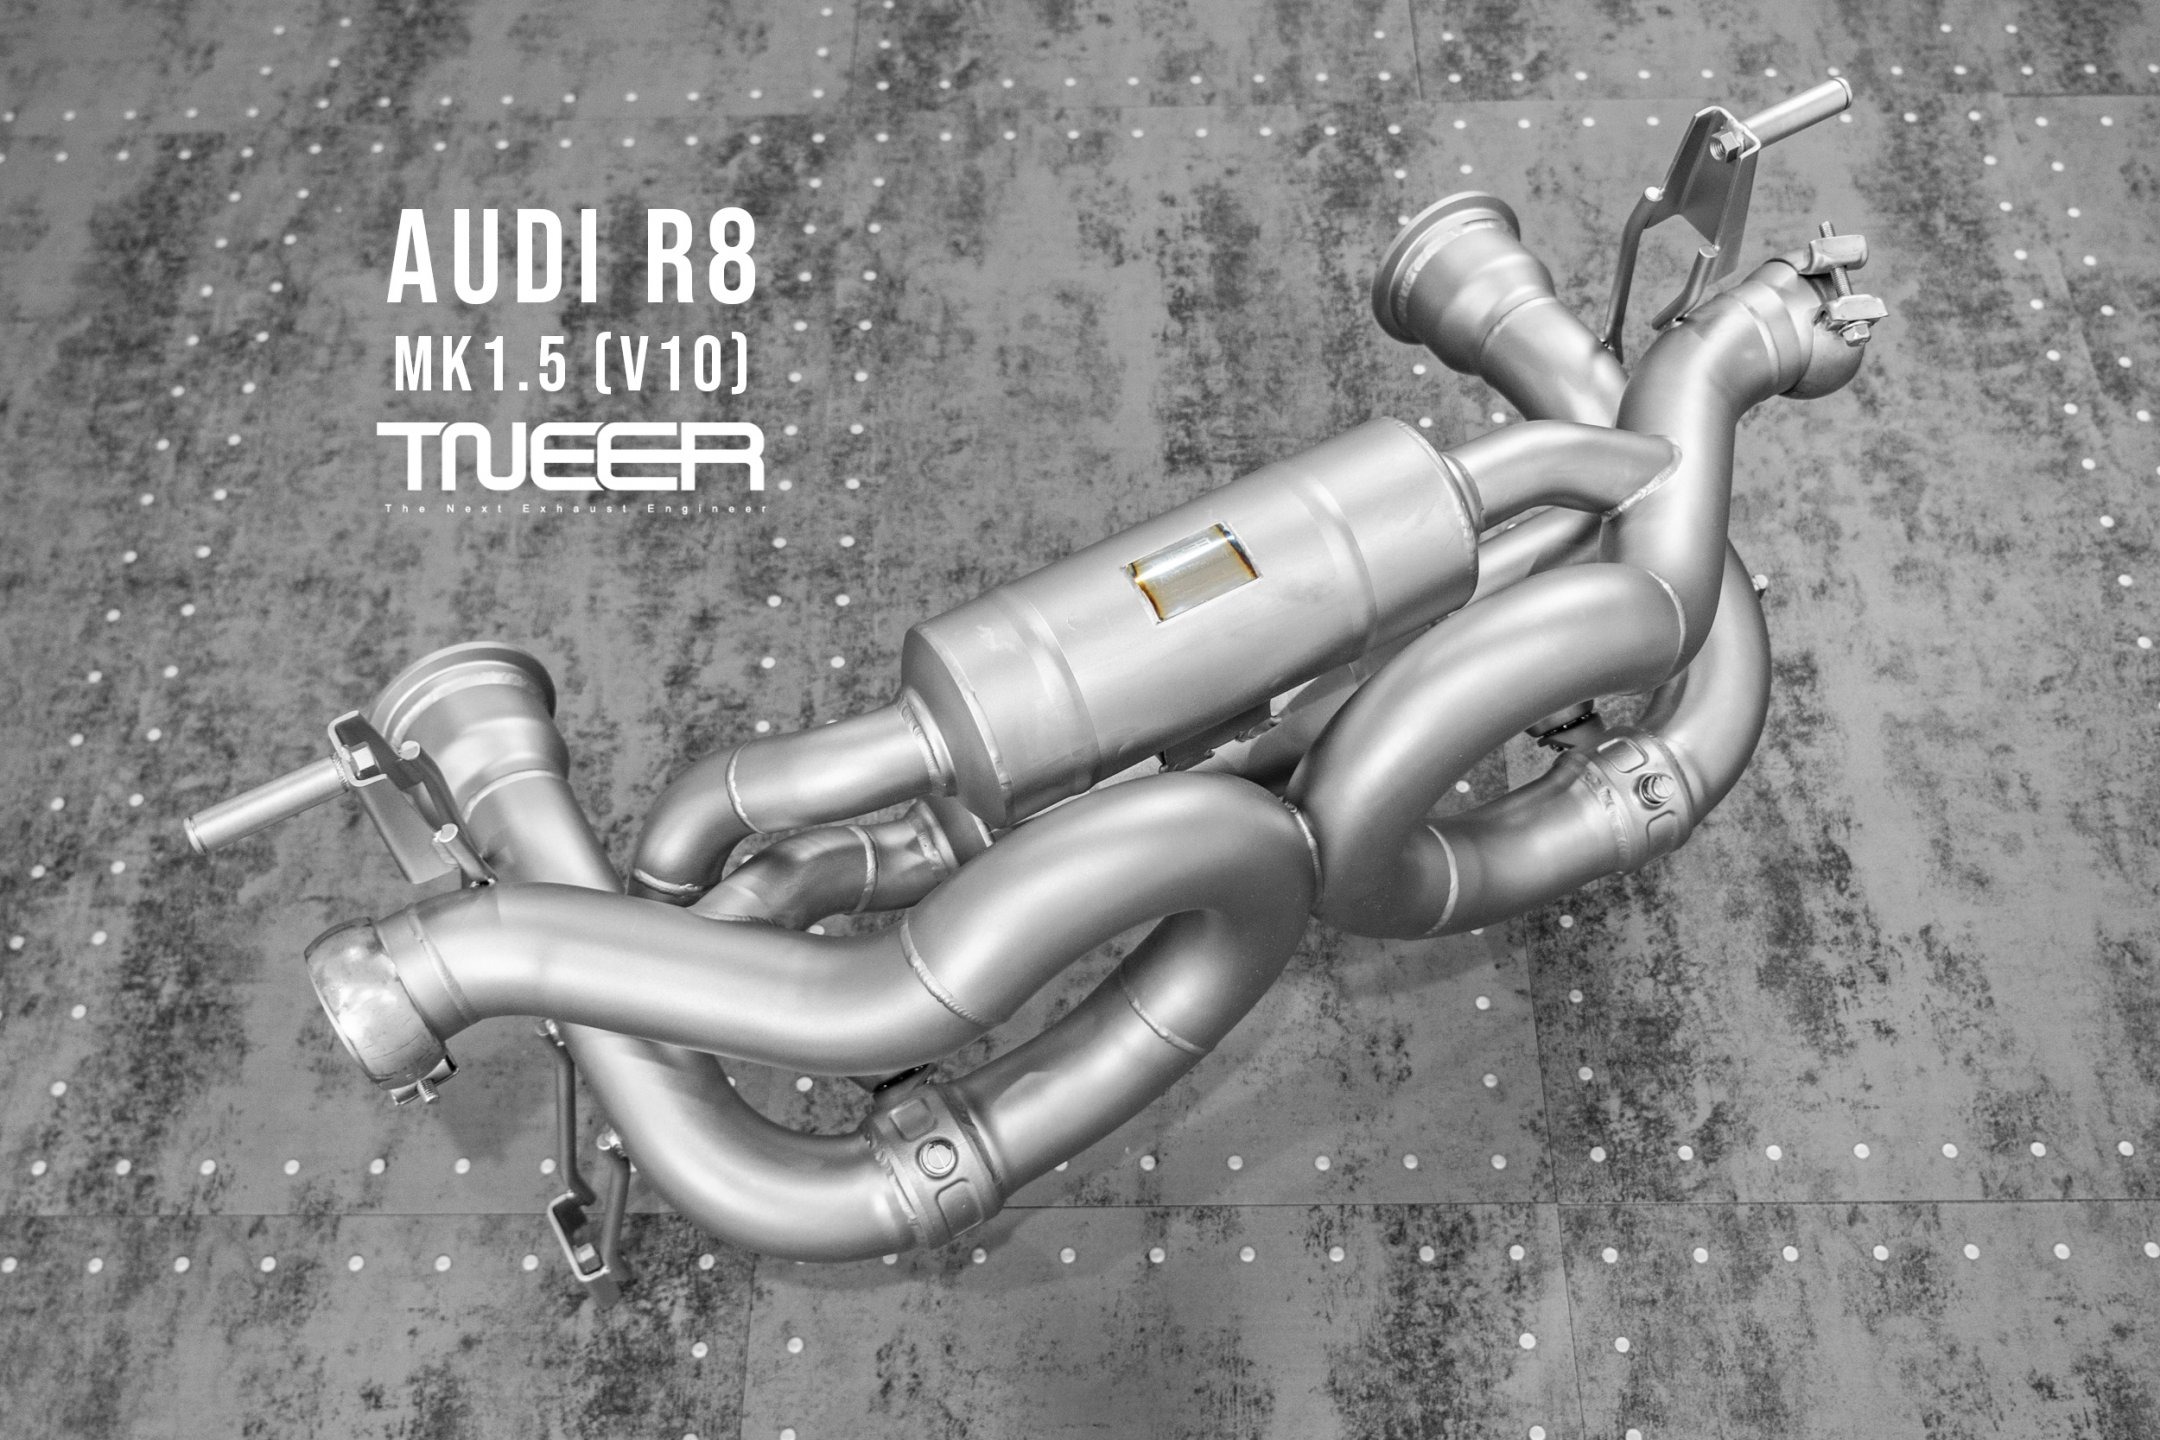 AUDI R8 MK1.5 V10 Titanium Special Edition